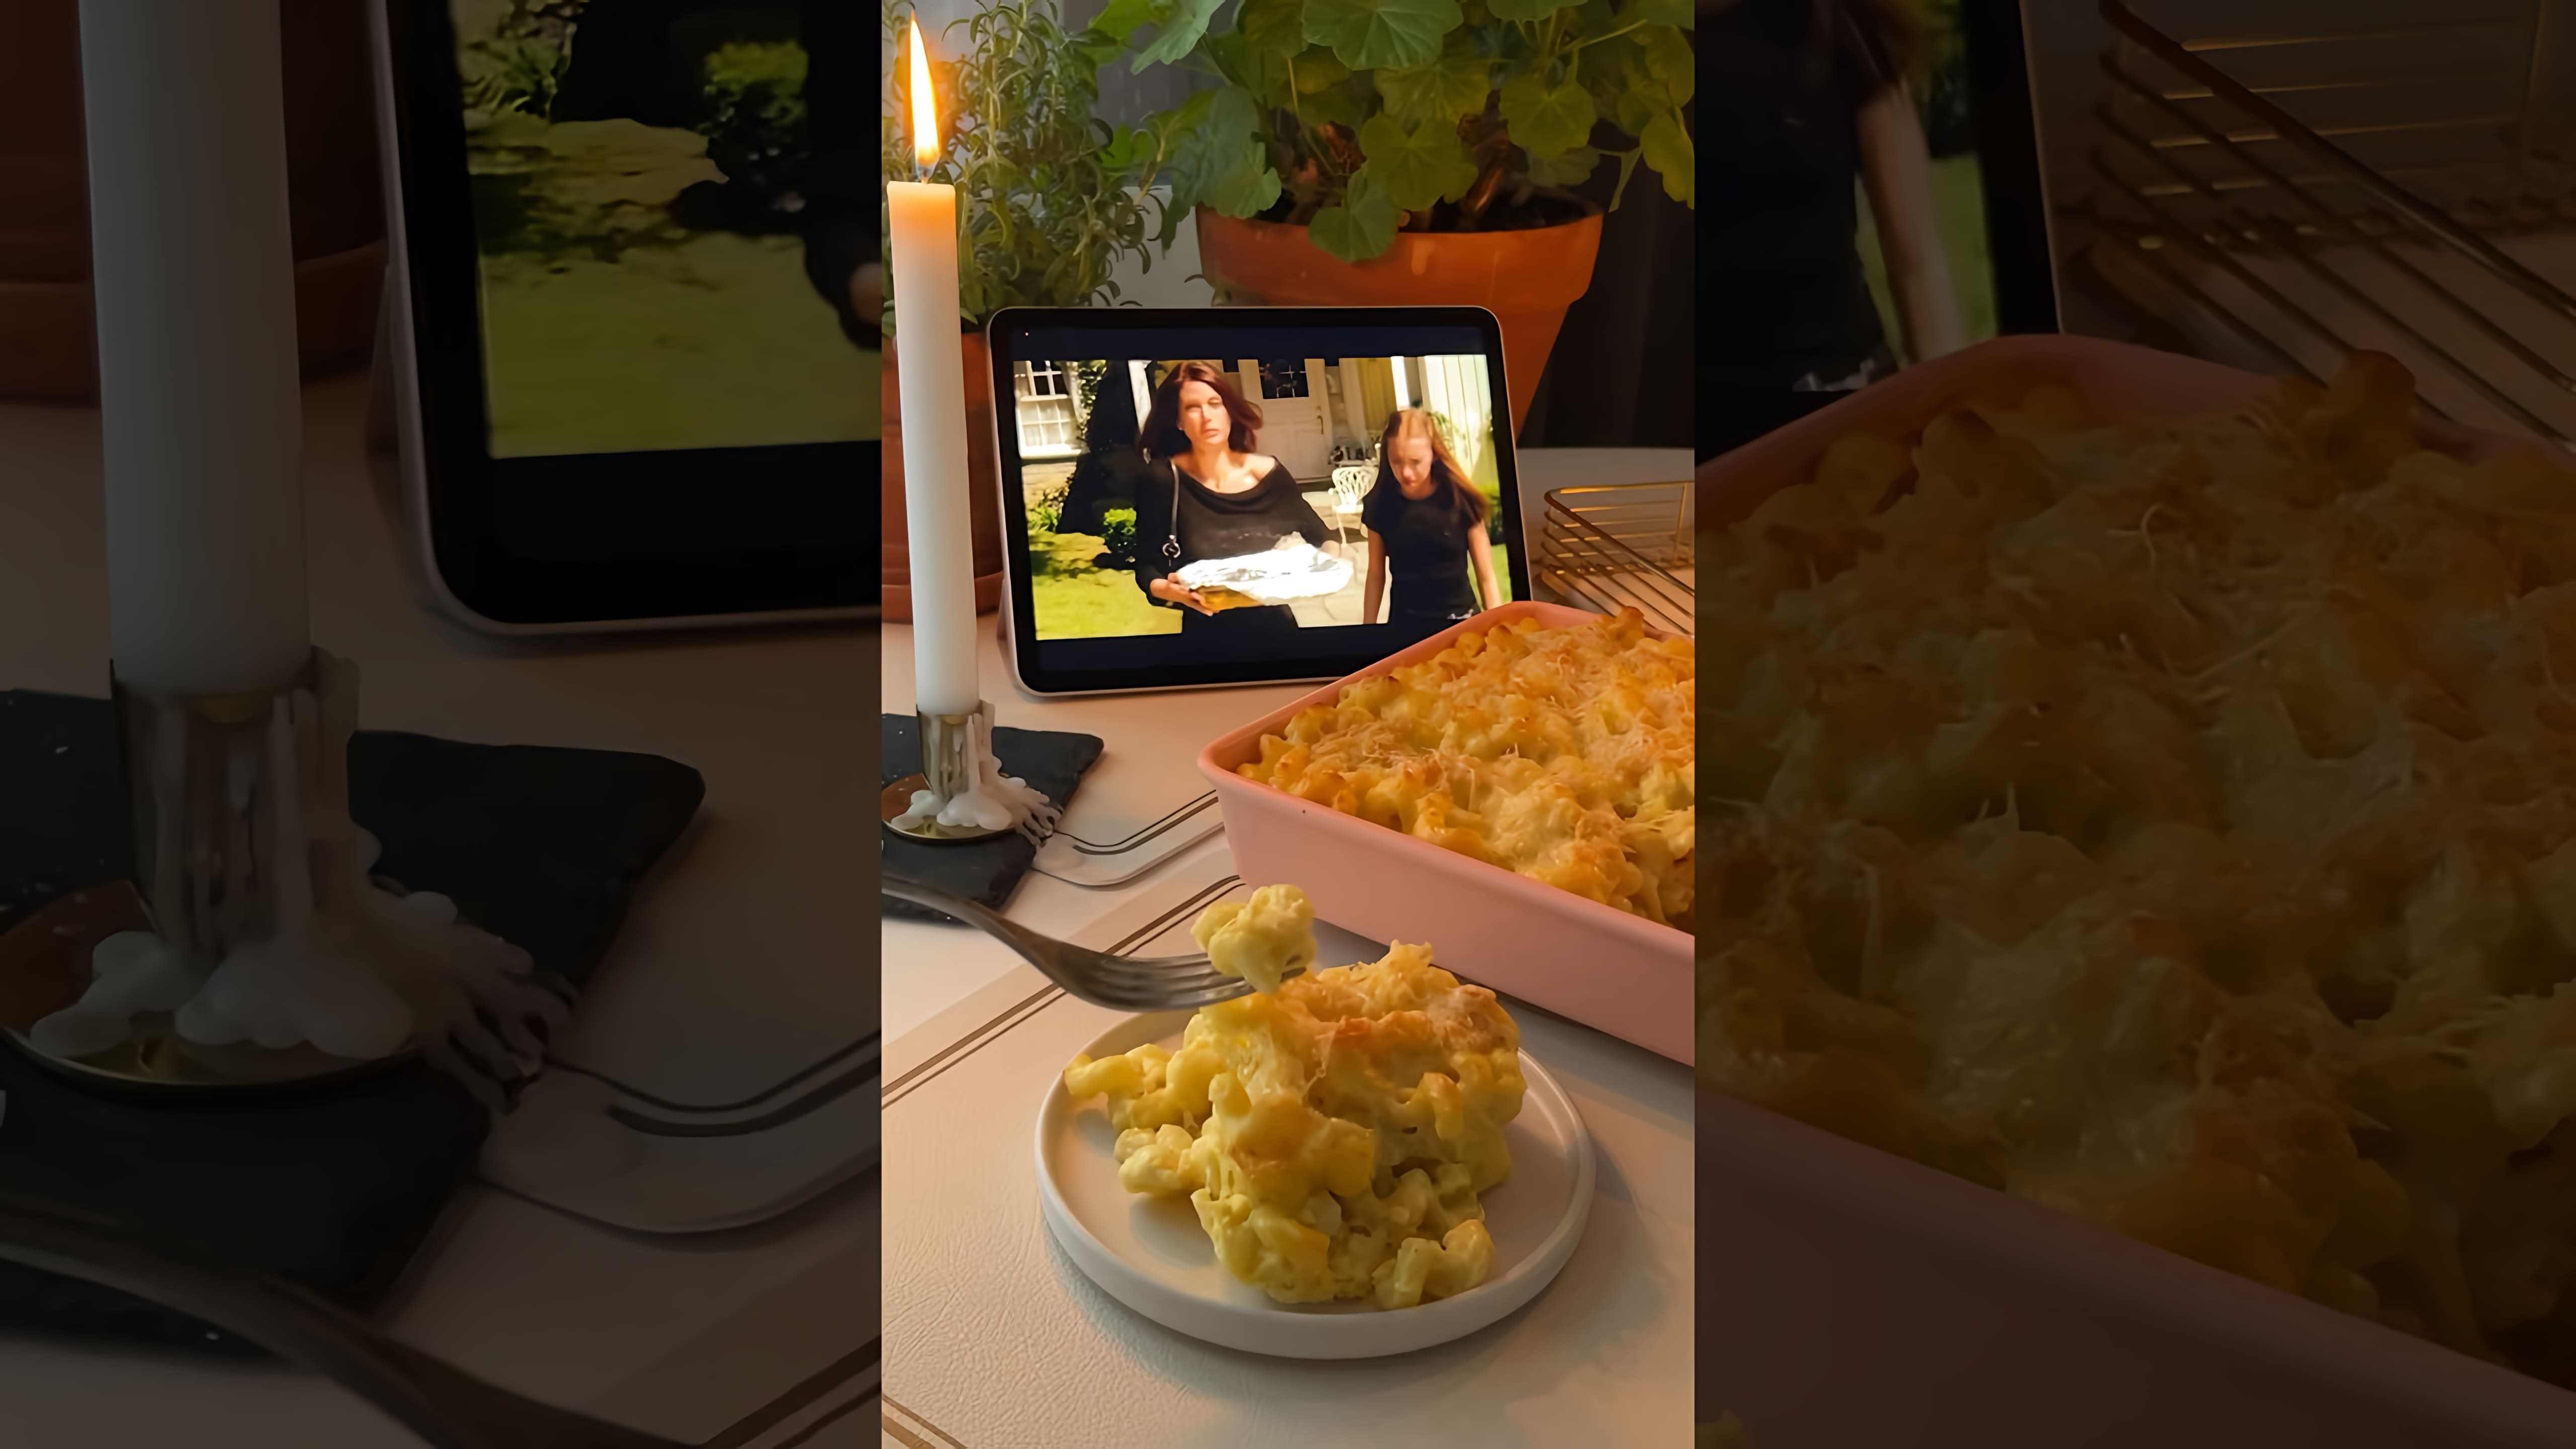 В этом видео рассказывается о том, как Сьюзан Майер, героиня сериала "Отчаянные домохозяйки", готовит макароны с сыром